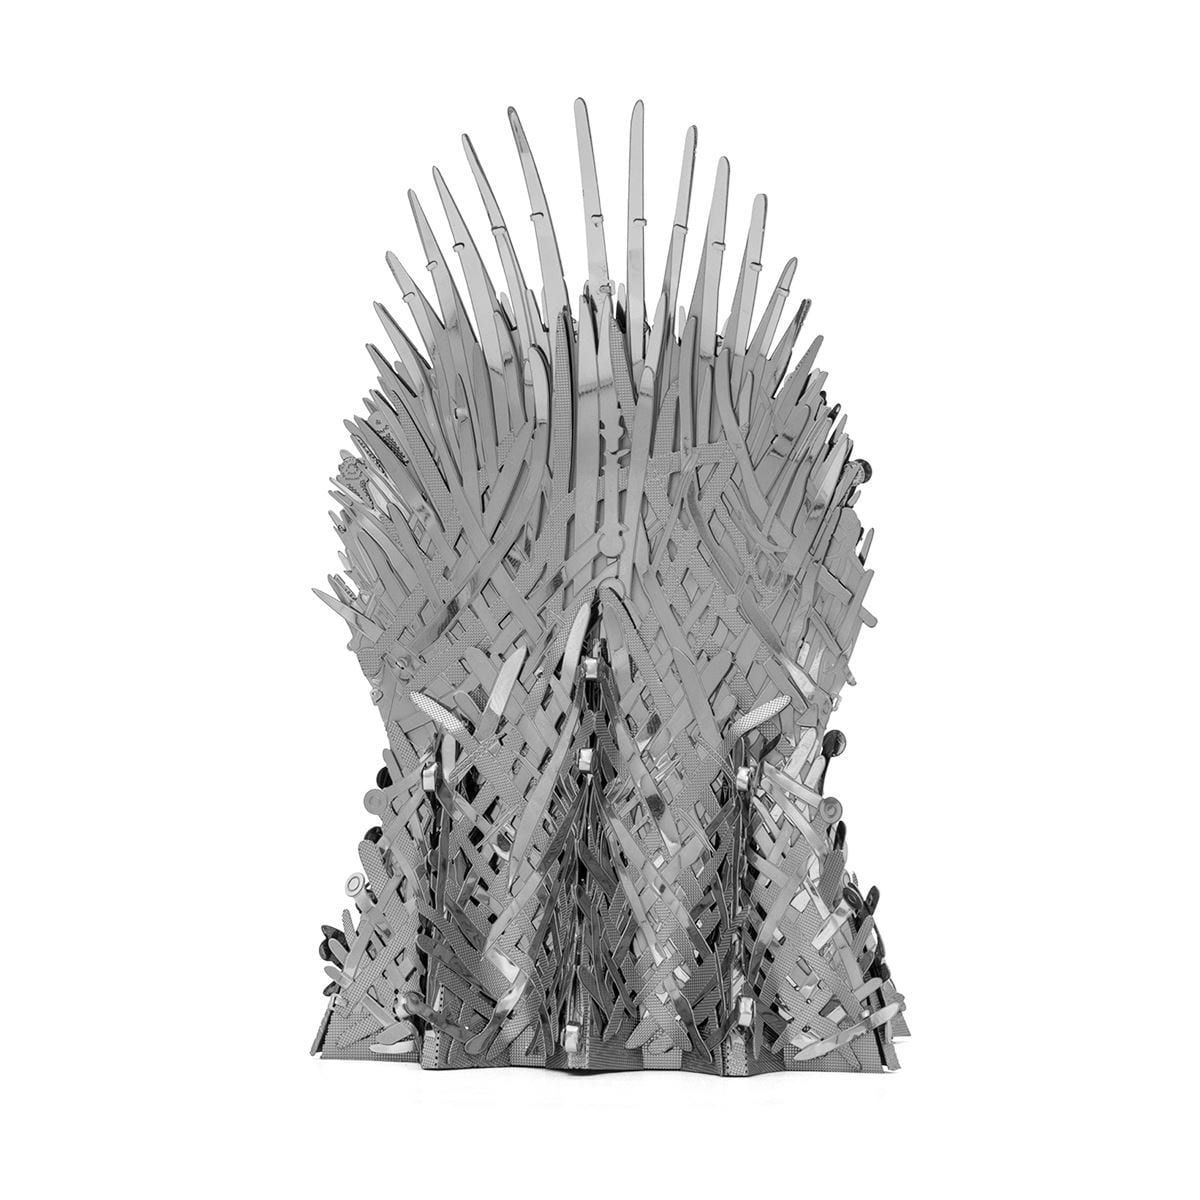  Mô Hình Kim Loại Lắp Ráp 3D Metal Head Game of Thrones Ngôi Báu Sắt Iron Throne – MP913 